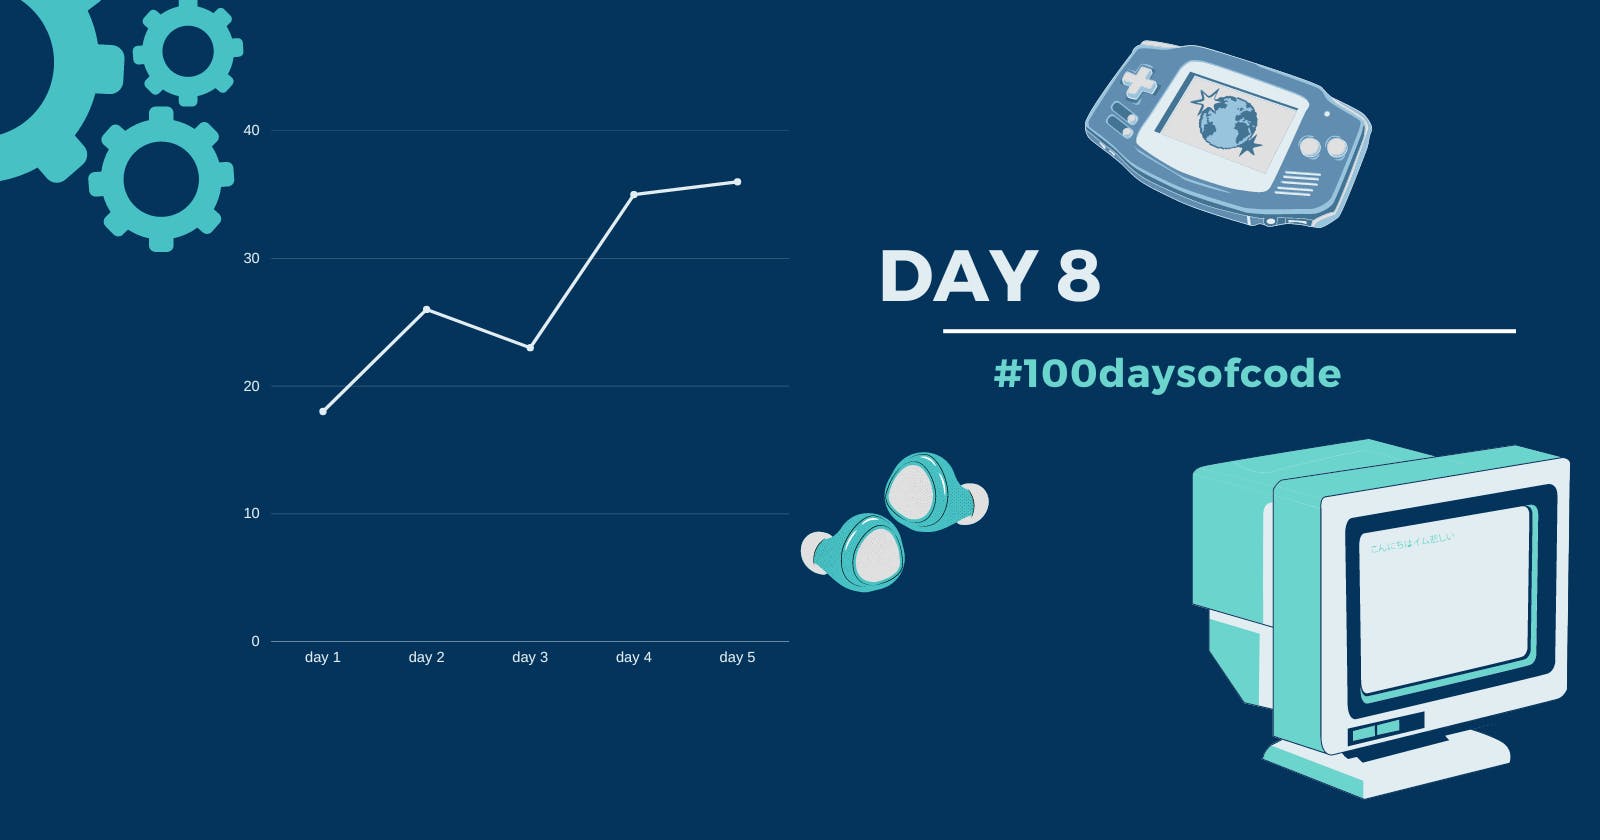 Day 8 in #100daysofcode challenge